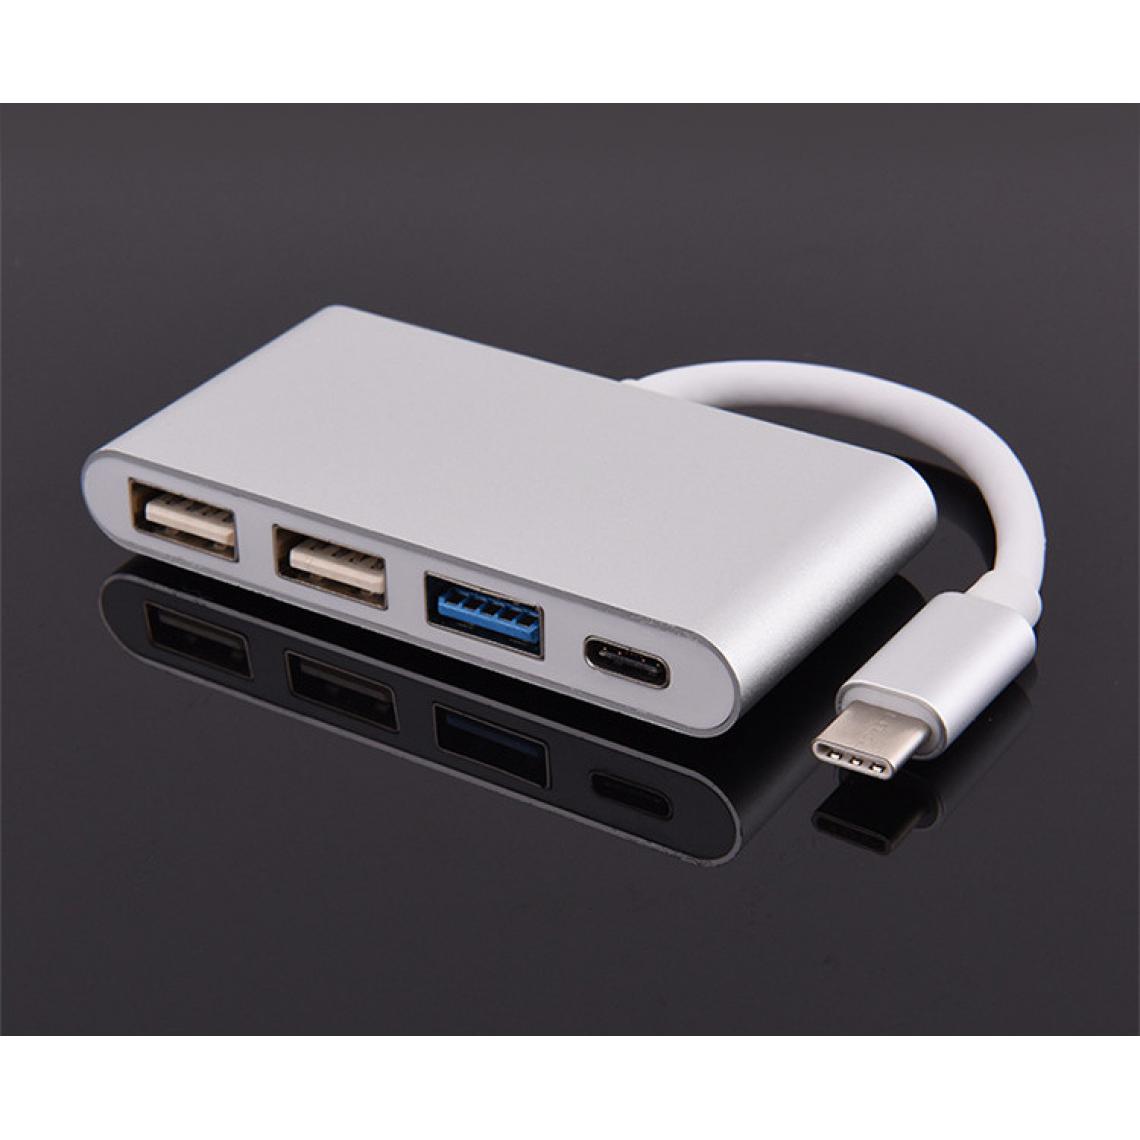 Shot - Multi Adaptateur 4 en 1 Type C pour GOOGLE Pixel 3a Smartphone Hub 2 ports USB 2.0 1 Port USB 3.0 (ARGENT) - Hub